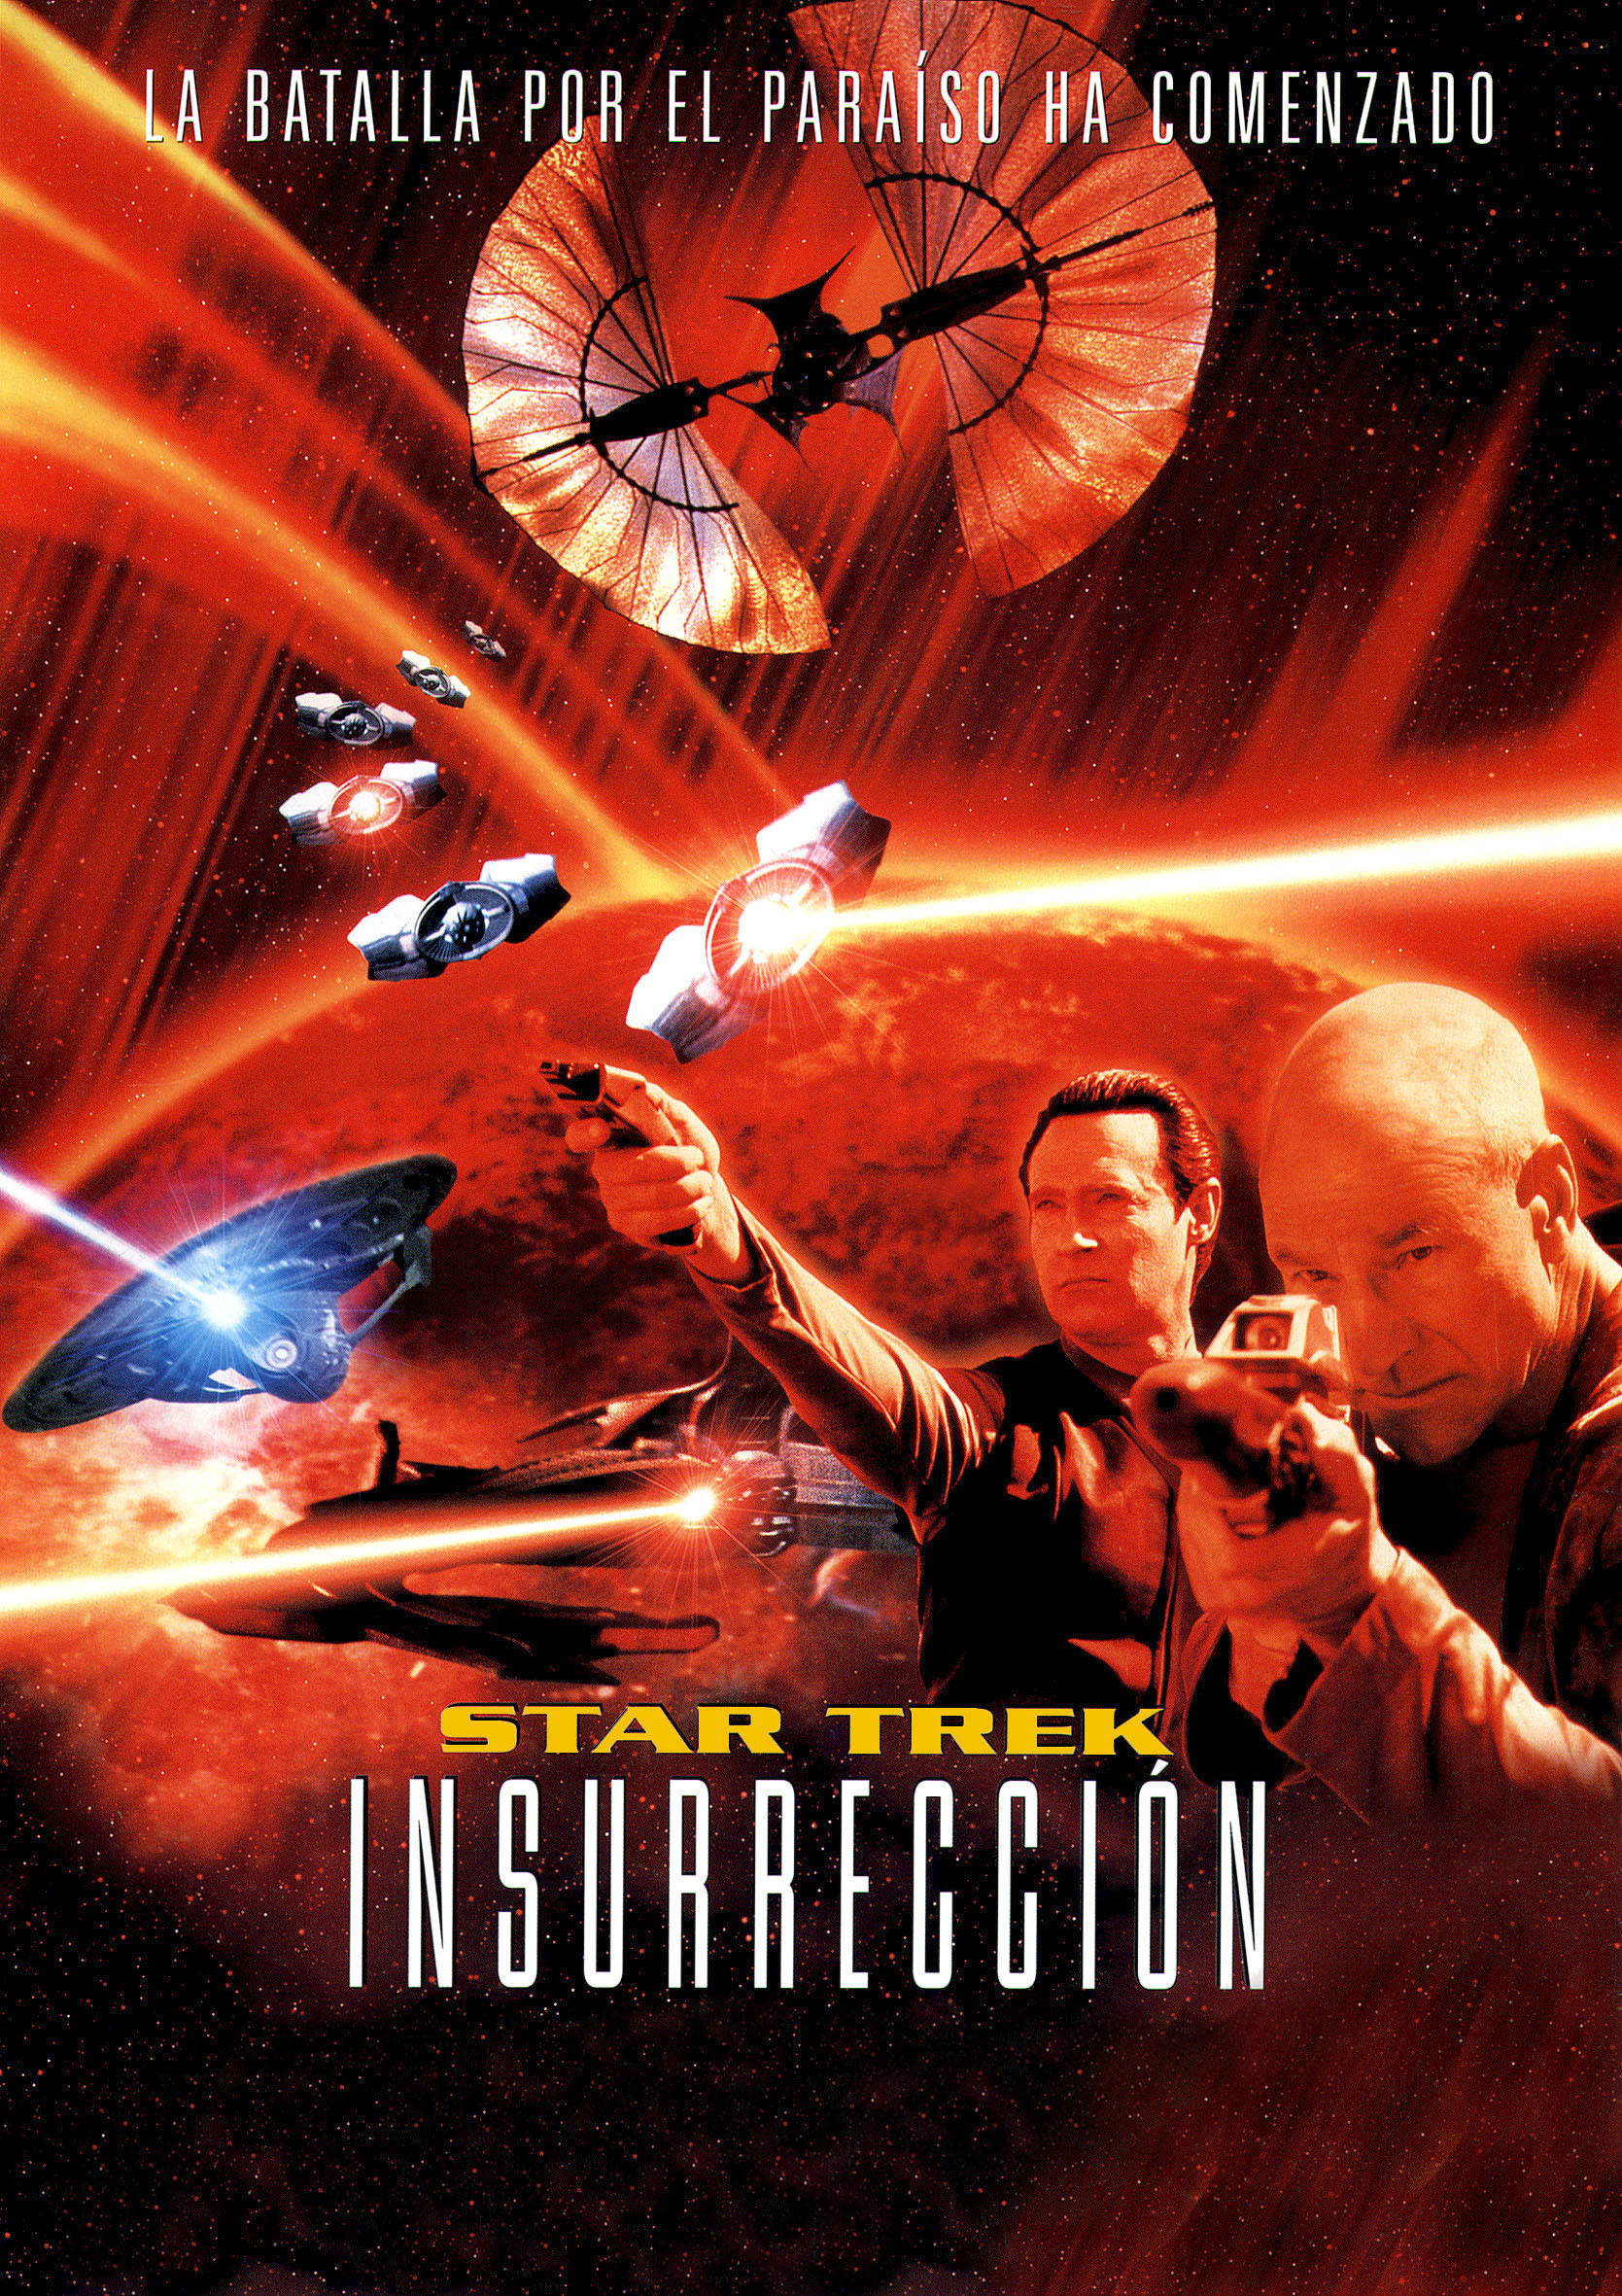 Star Trek: Insurrection Backgrounds, Compatible - PC, Mobile, Gadgets| 1669x2362 px